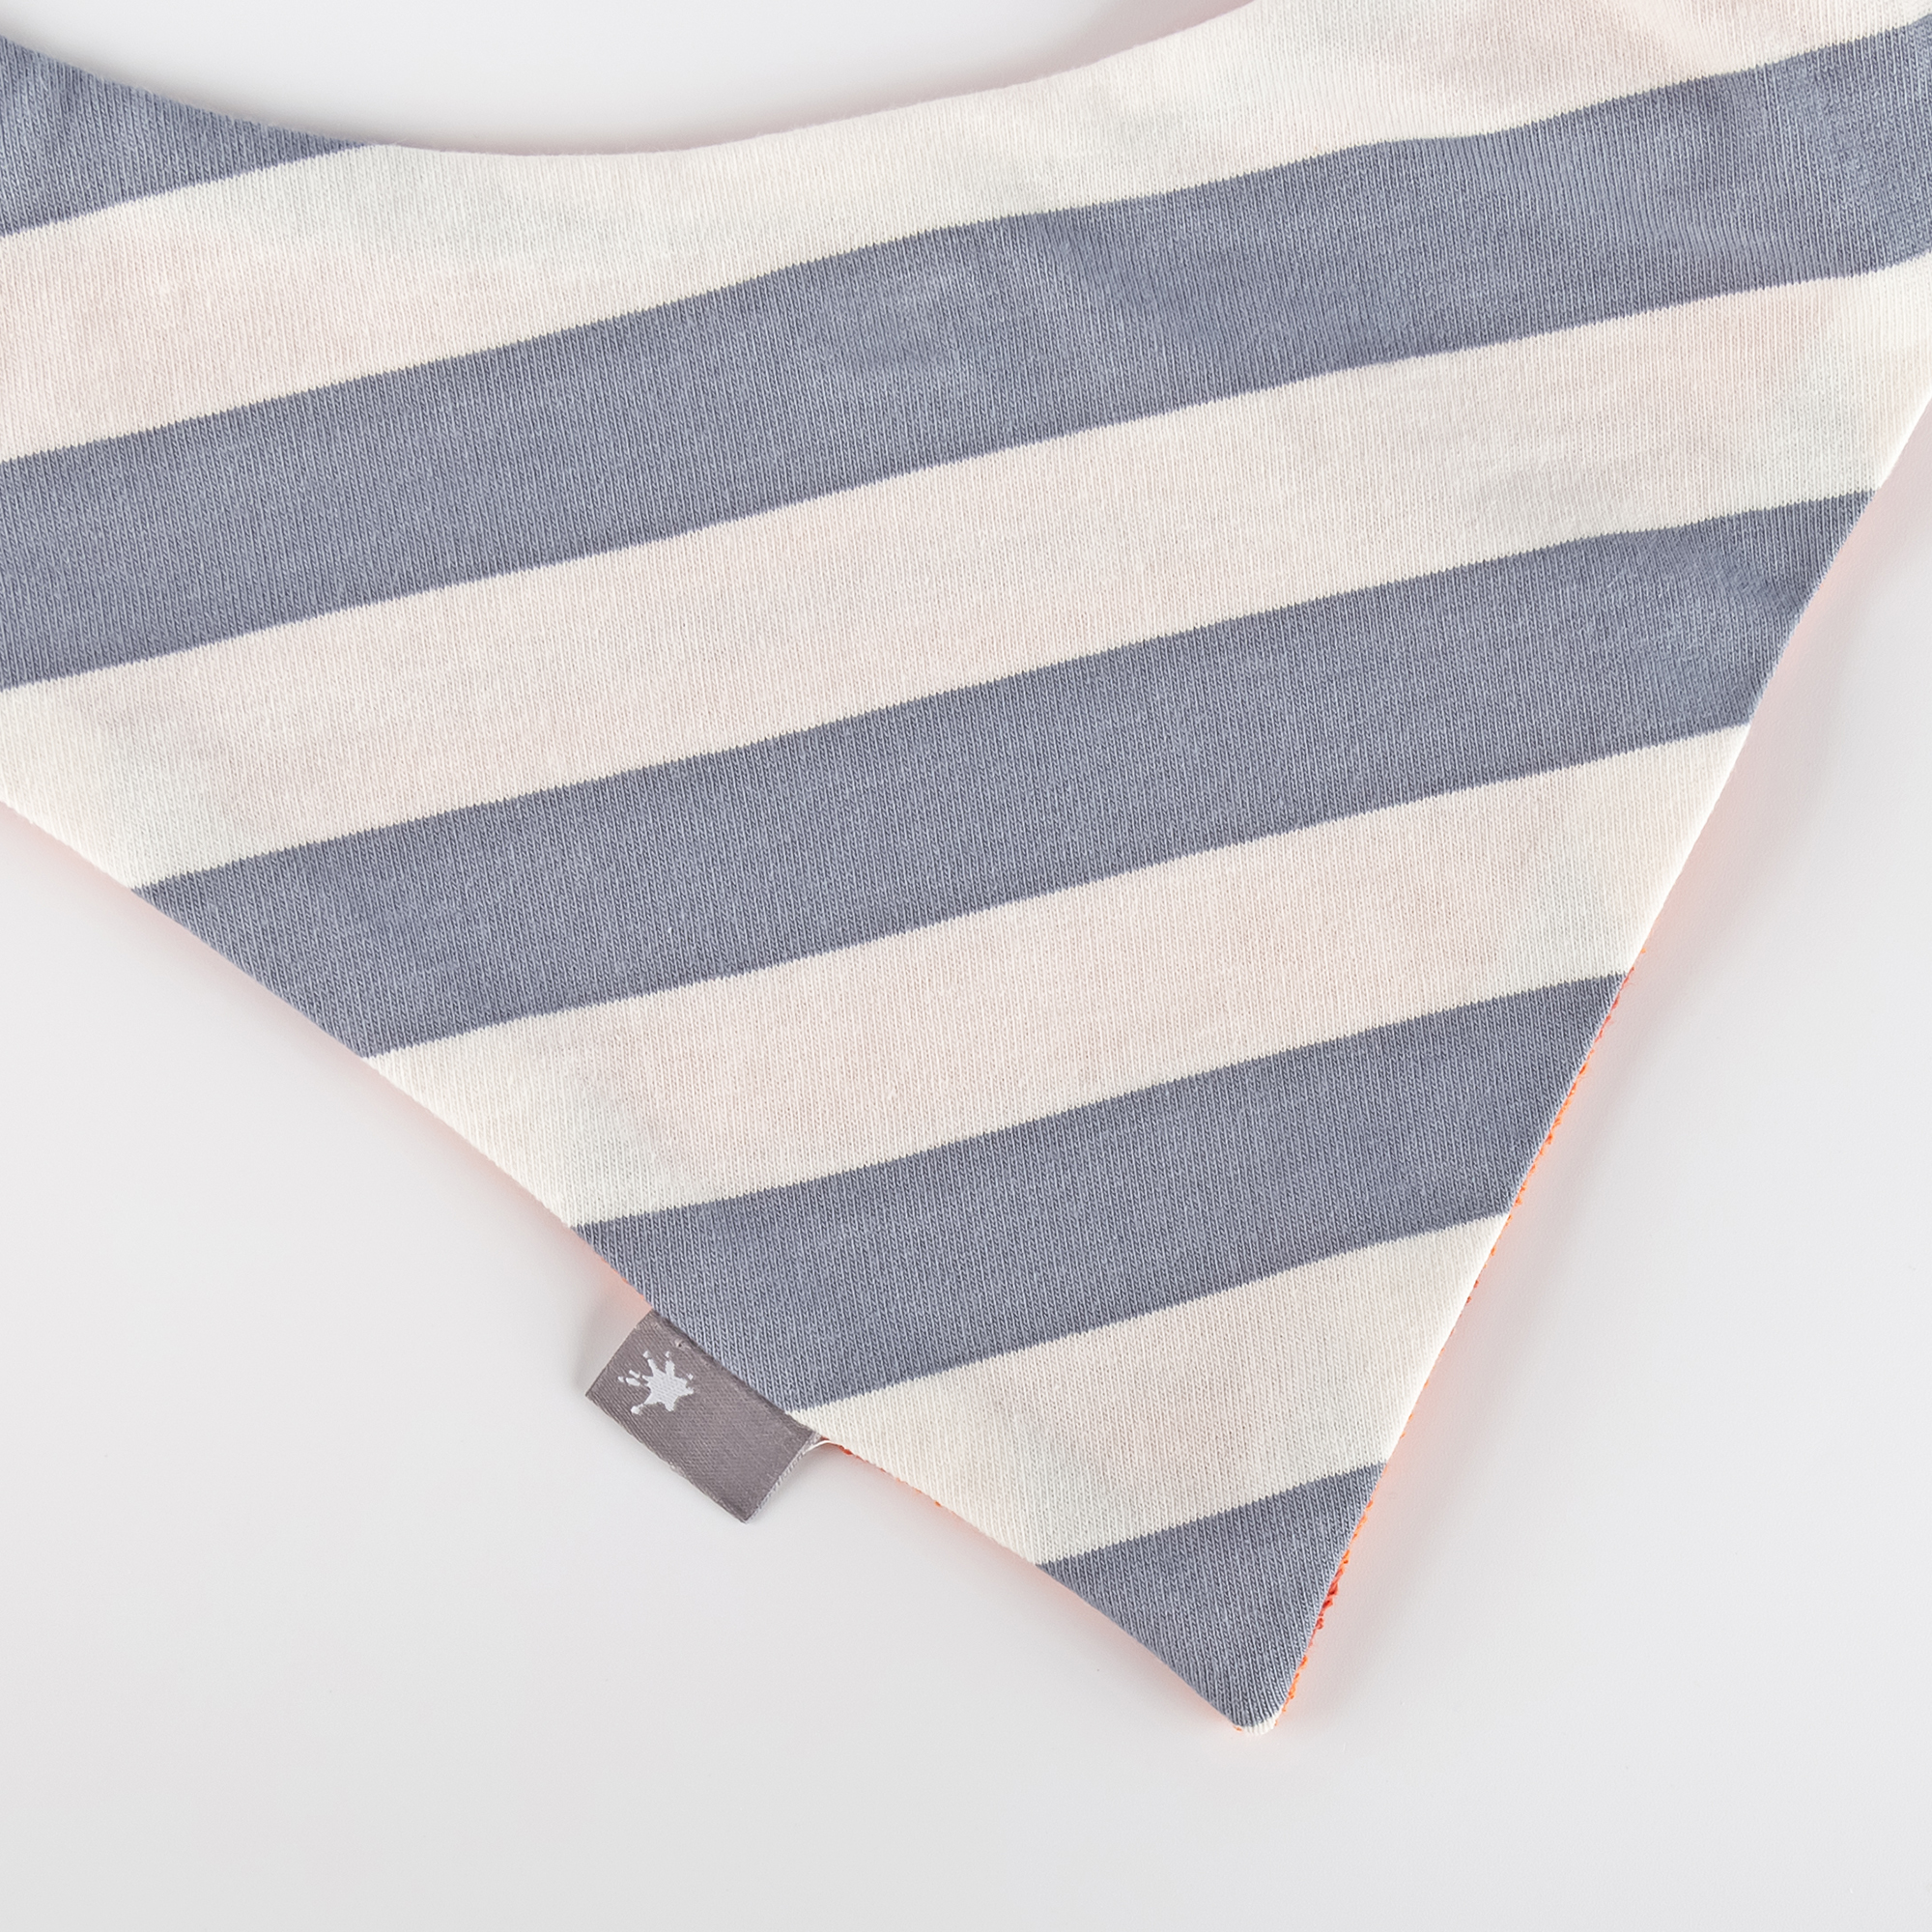 Double-layered reversible baby bandana bib